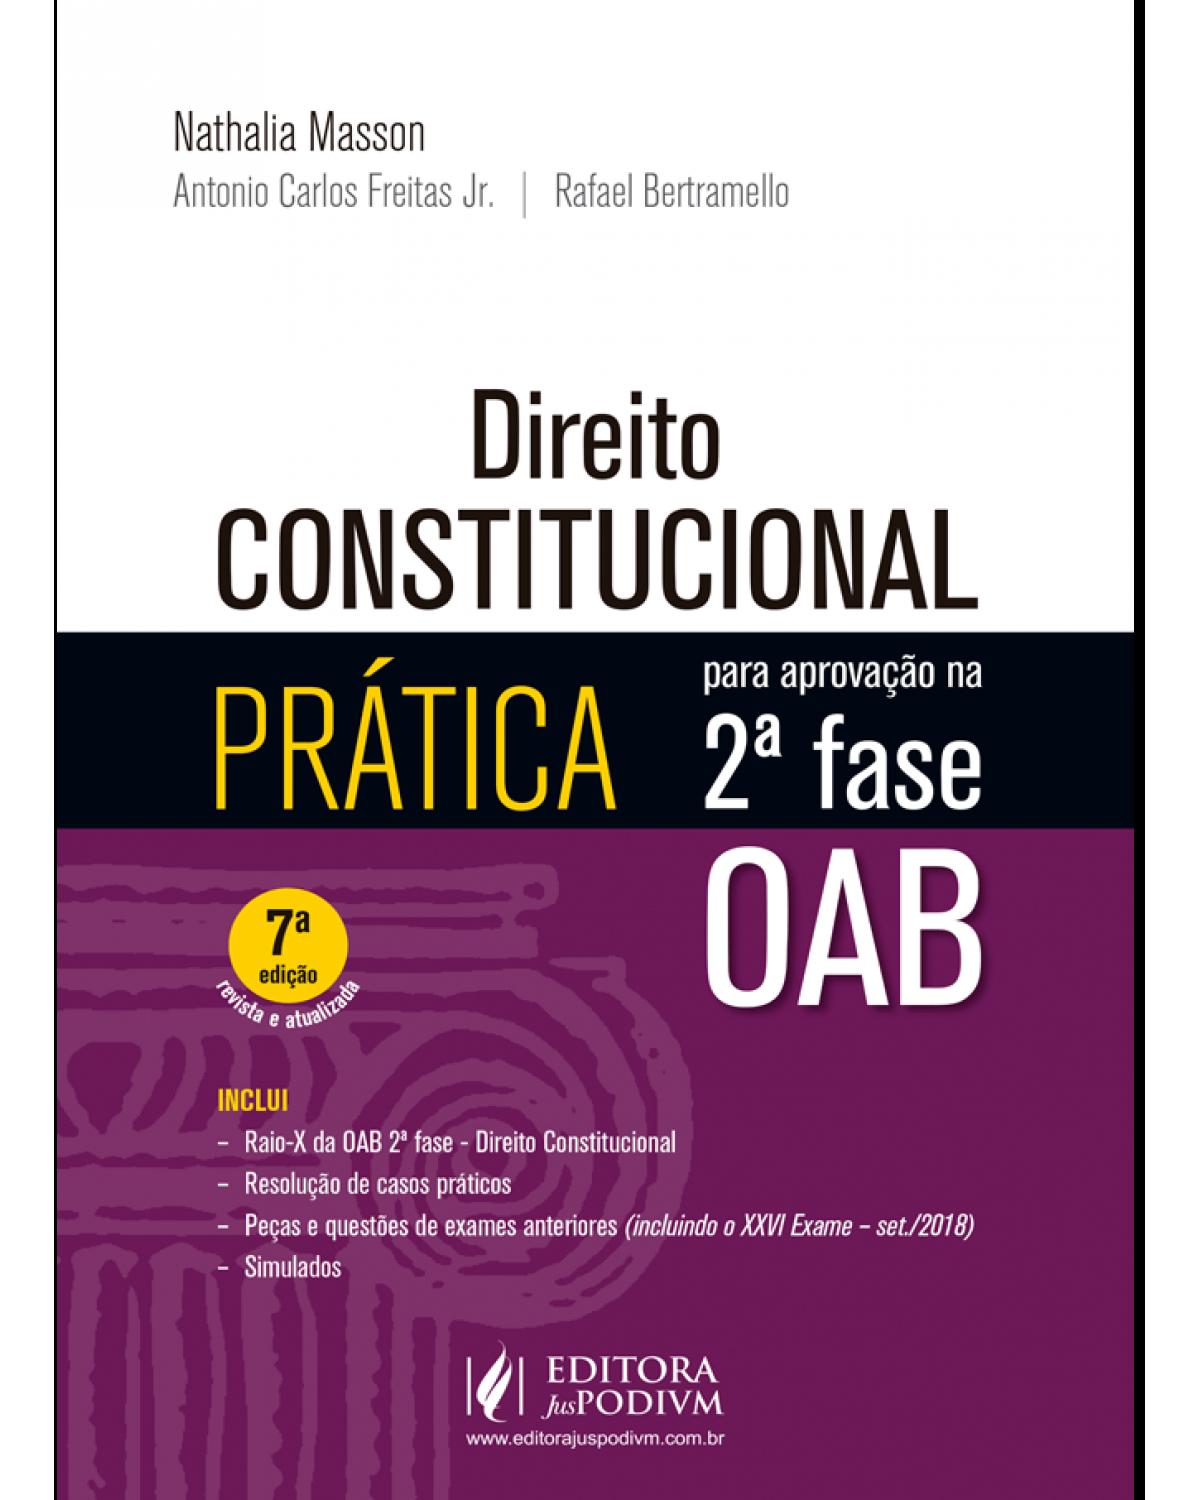 Direito constitucional - prática para aprovação na 2ª fase OAB - 7ª Edição | 2019